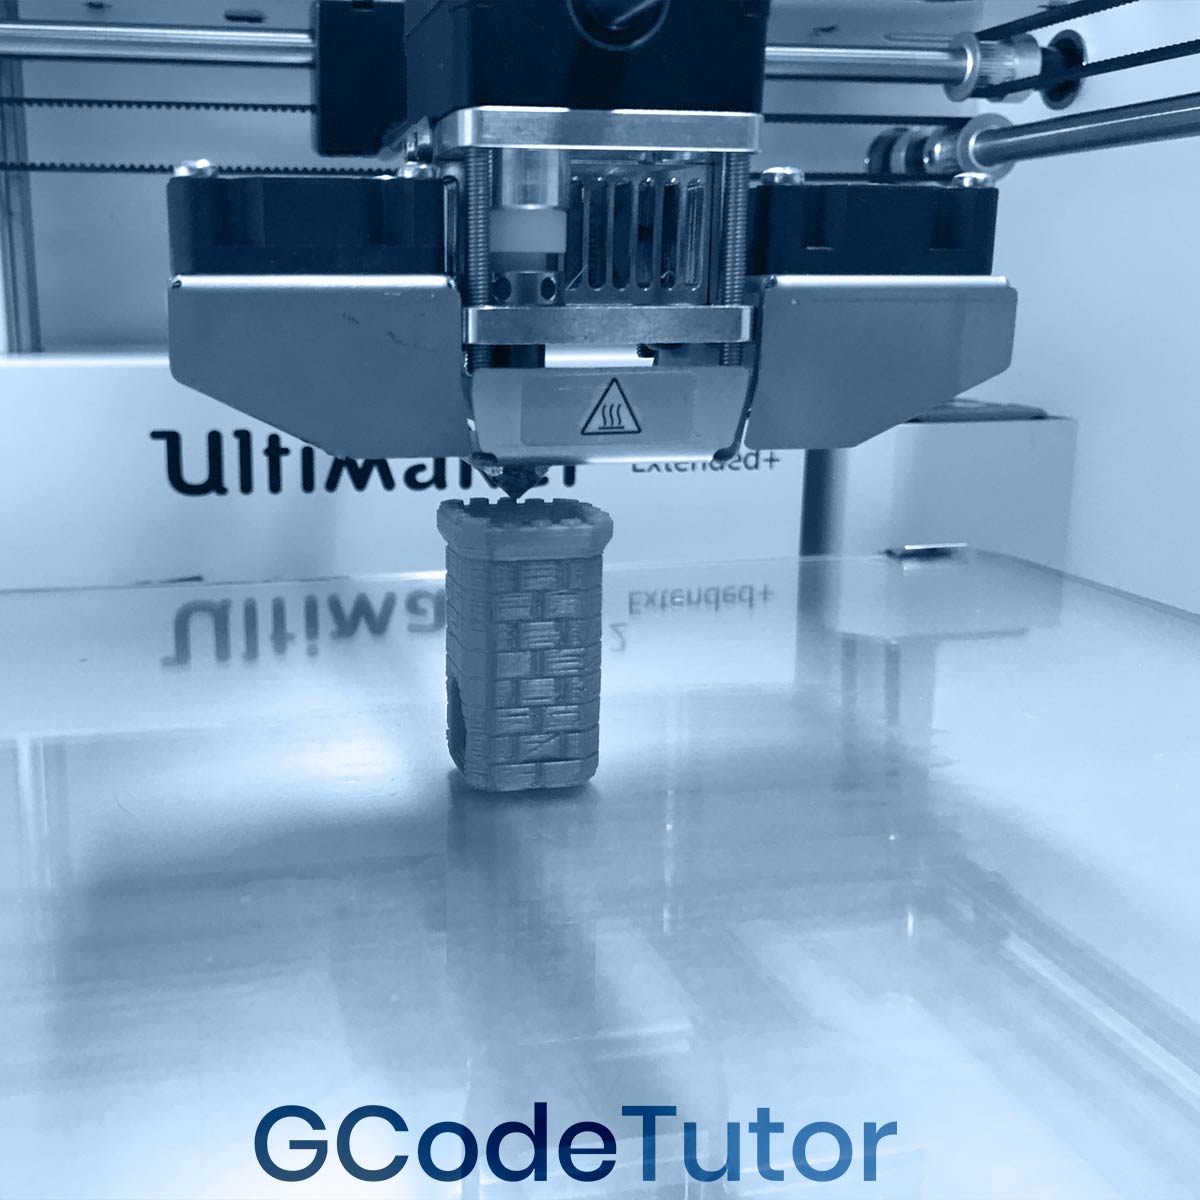 3D printer programming using G-Code - 3D Printer GcoDe